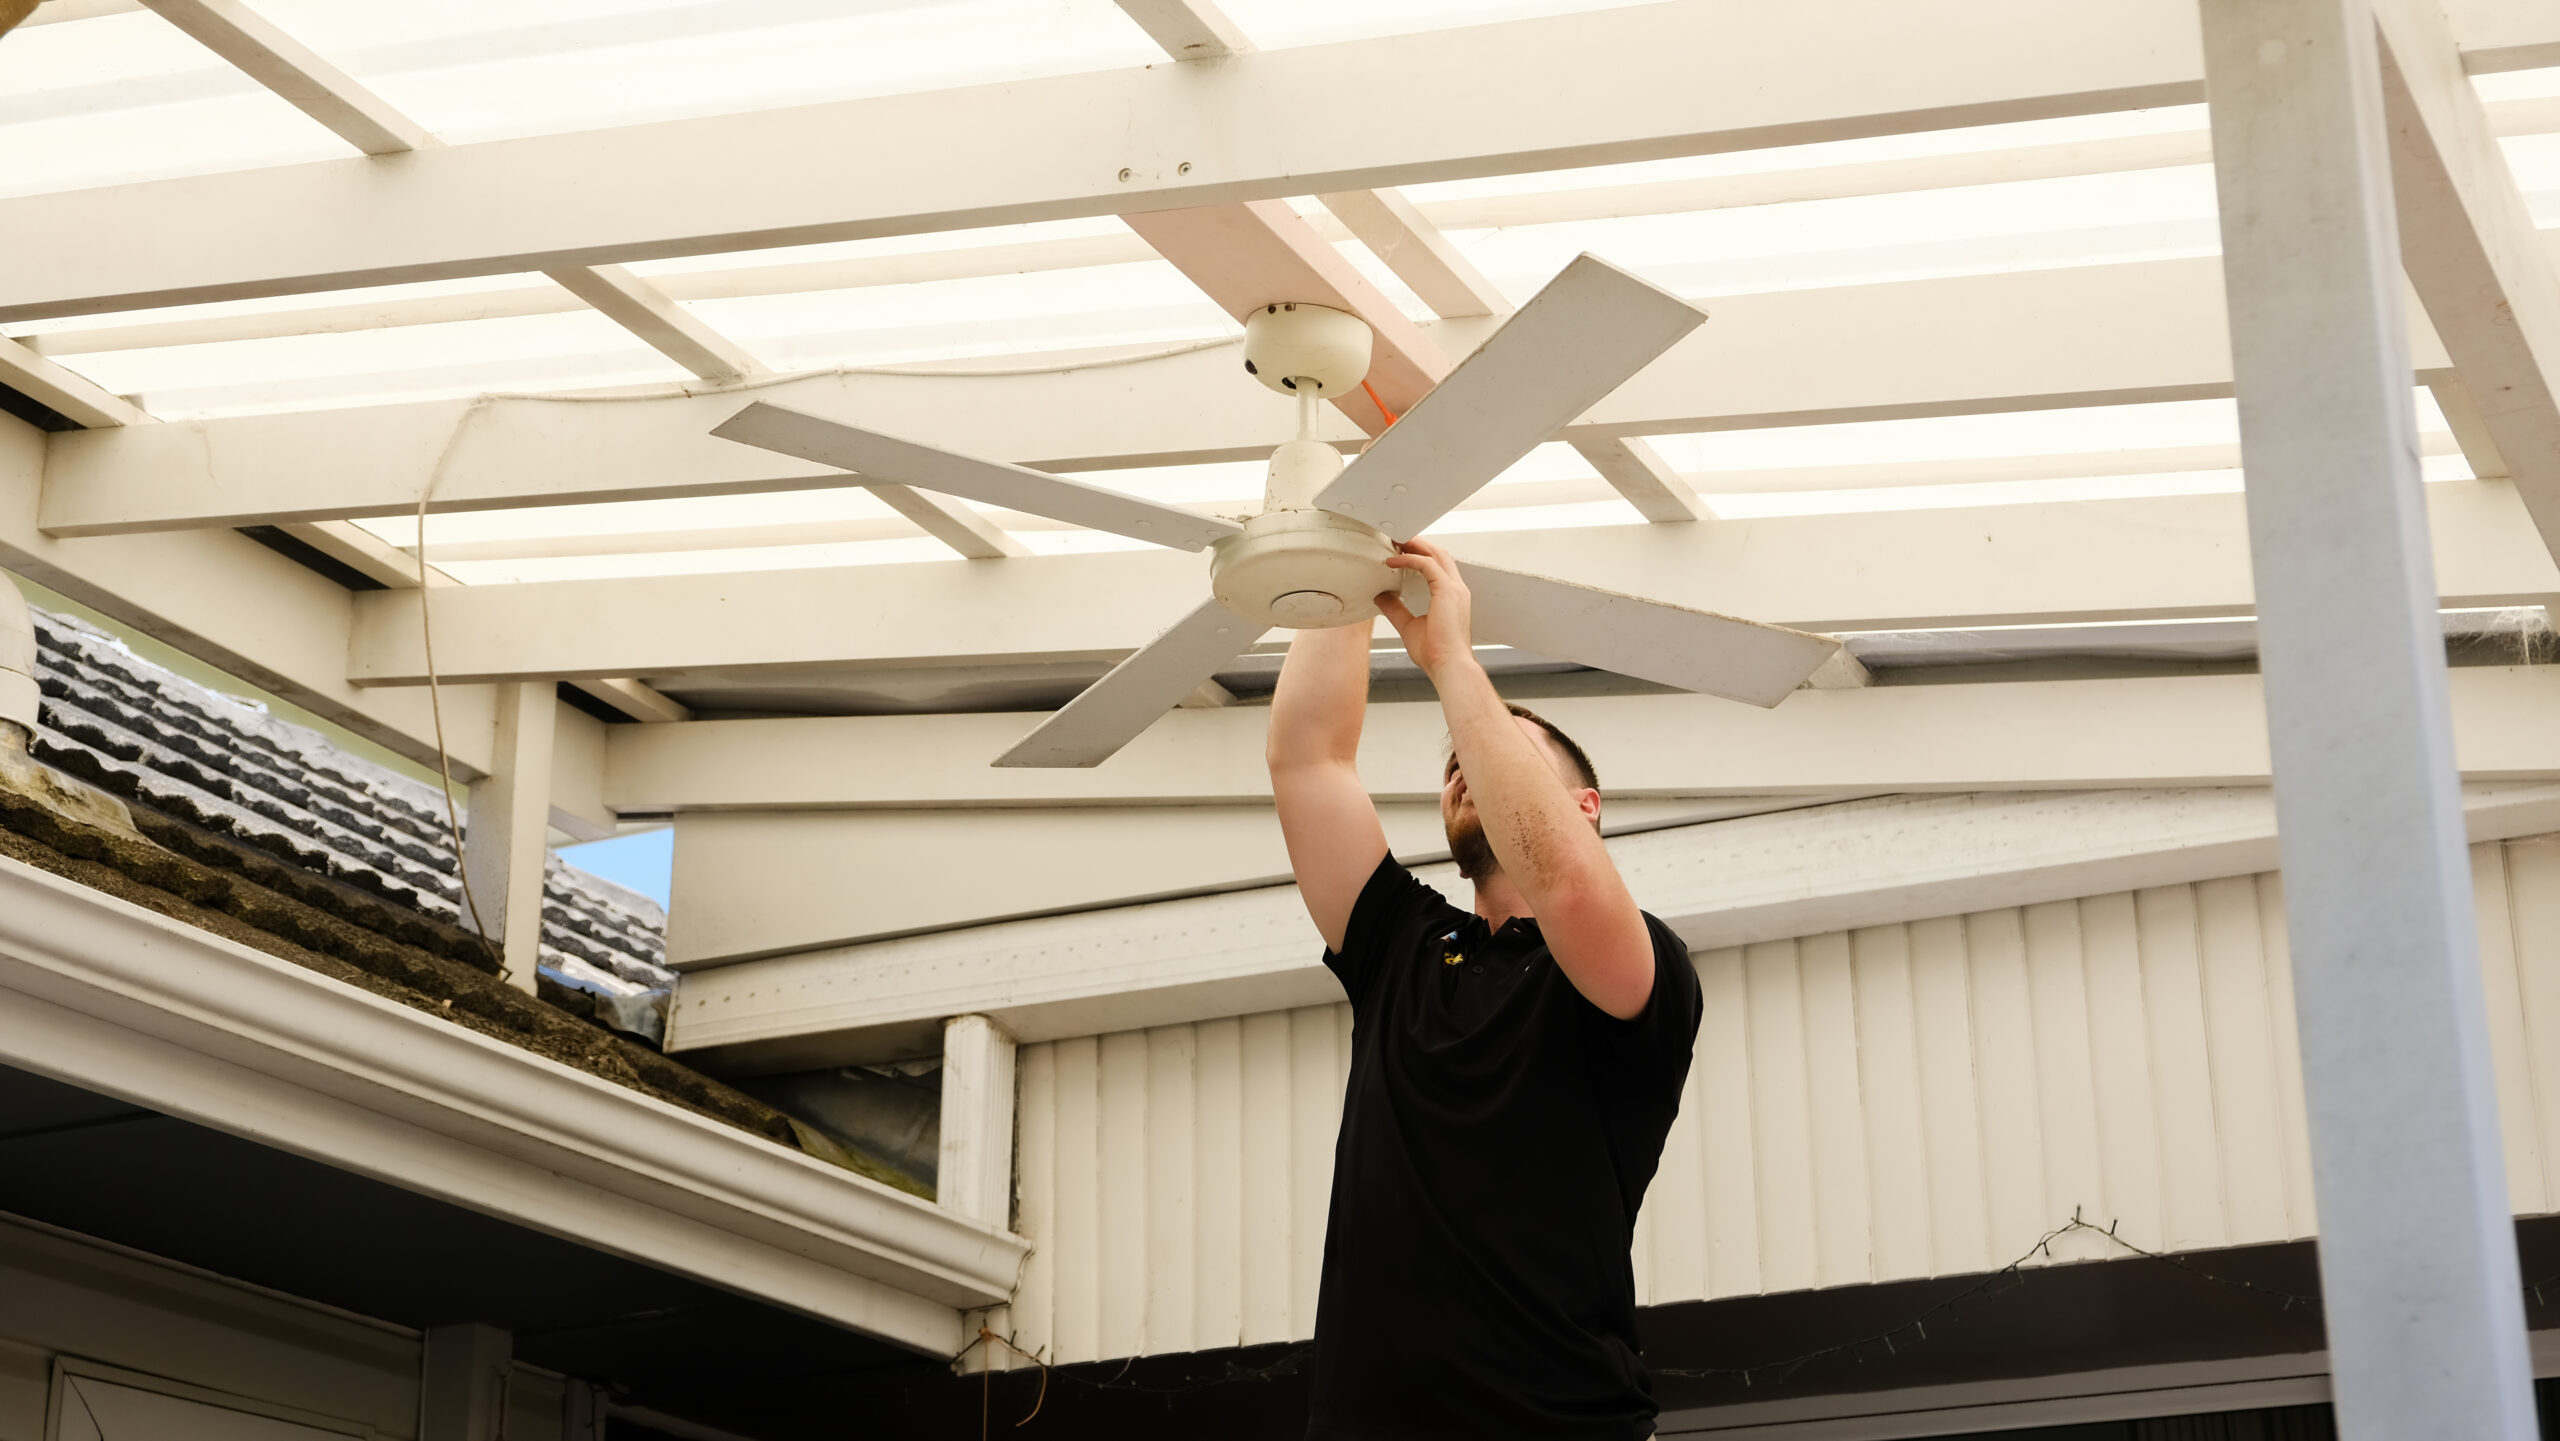 Mr Glow Electrical installing ceiling fan.